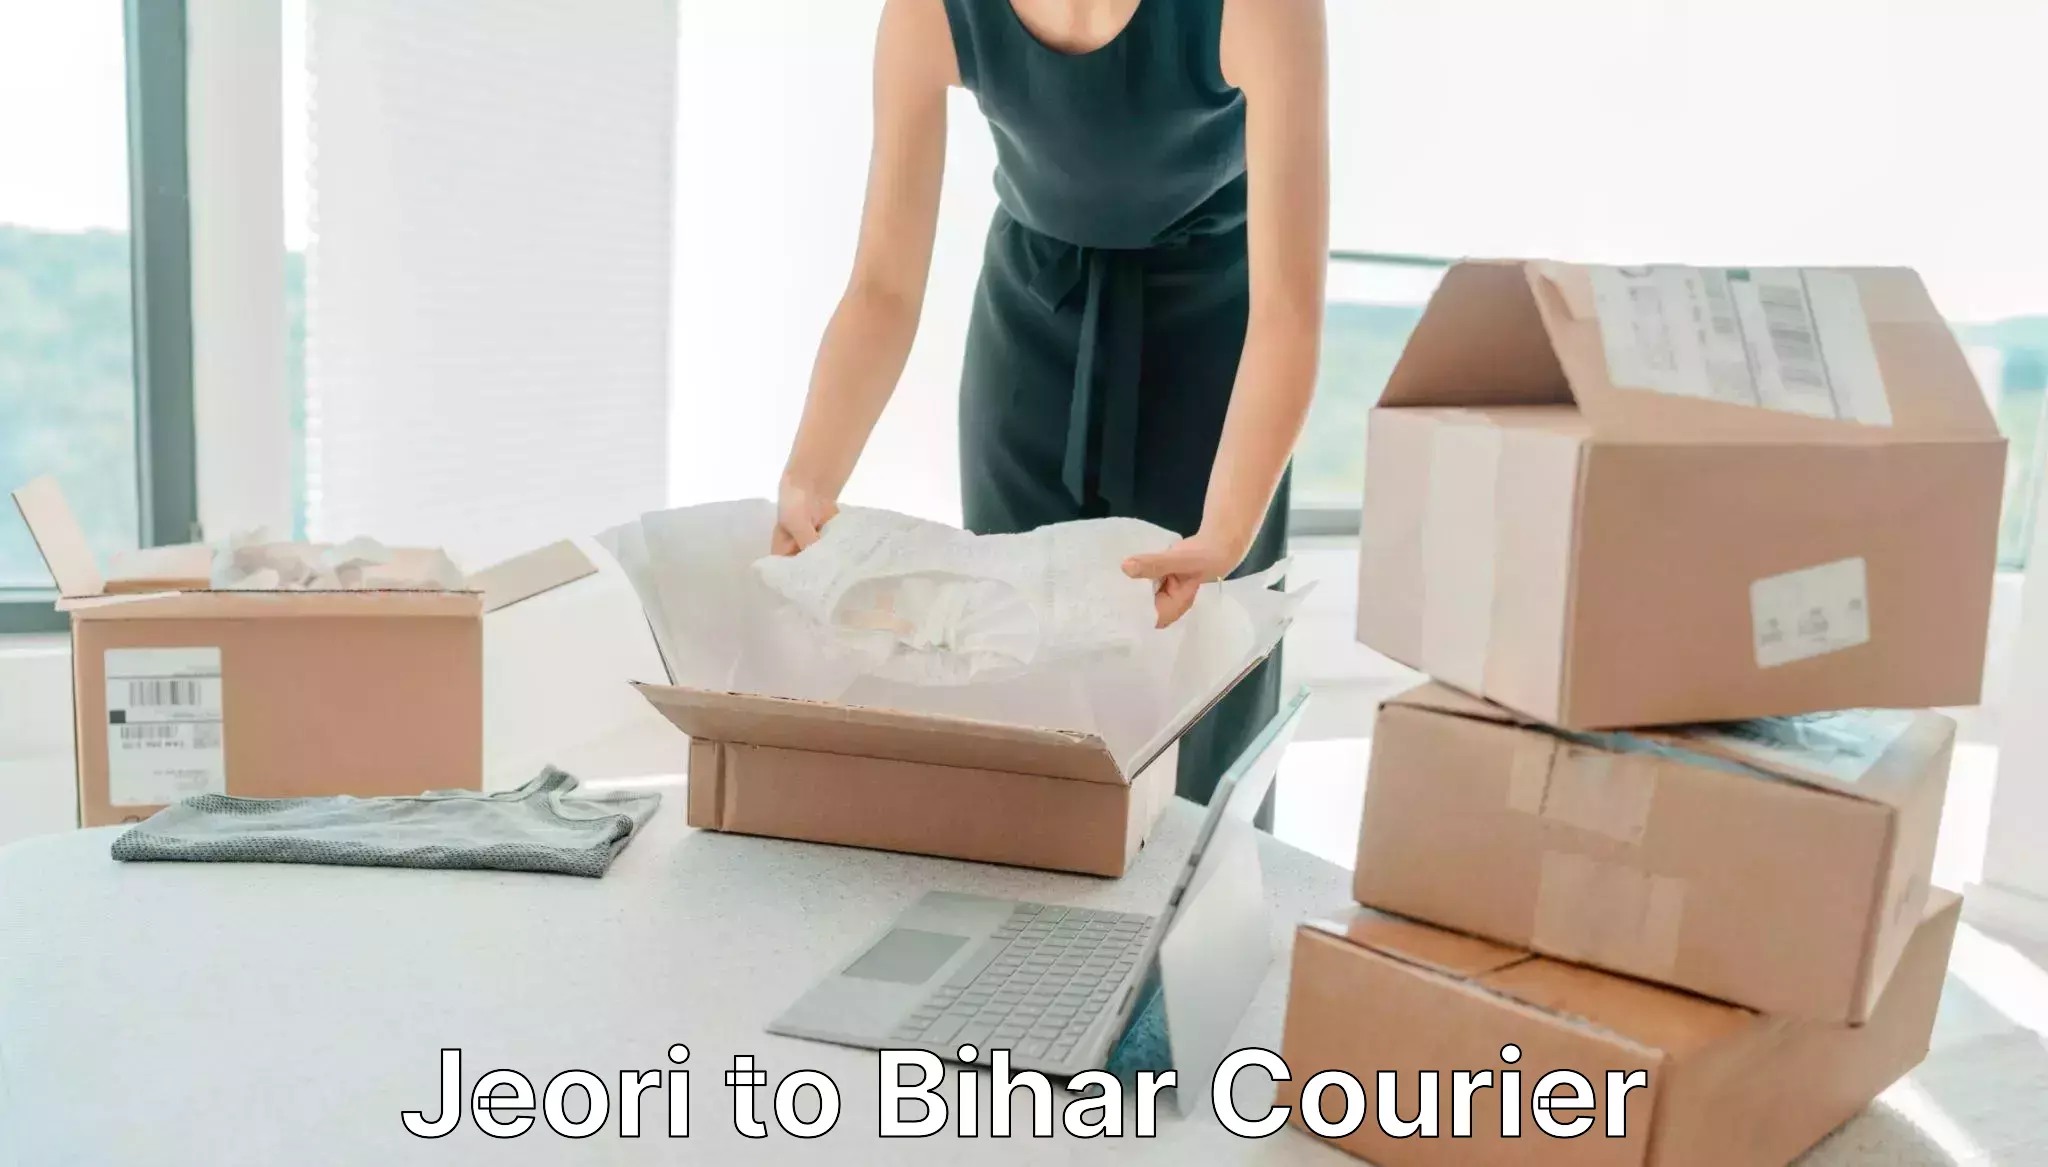 User-friendly delivery service Jeori to Bihta